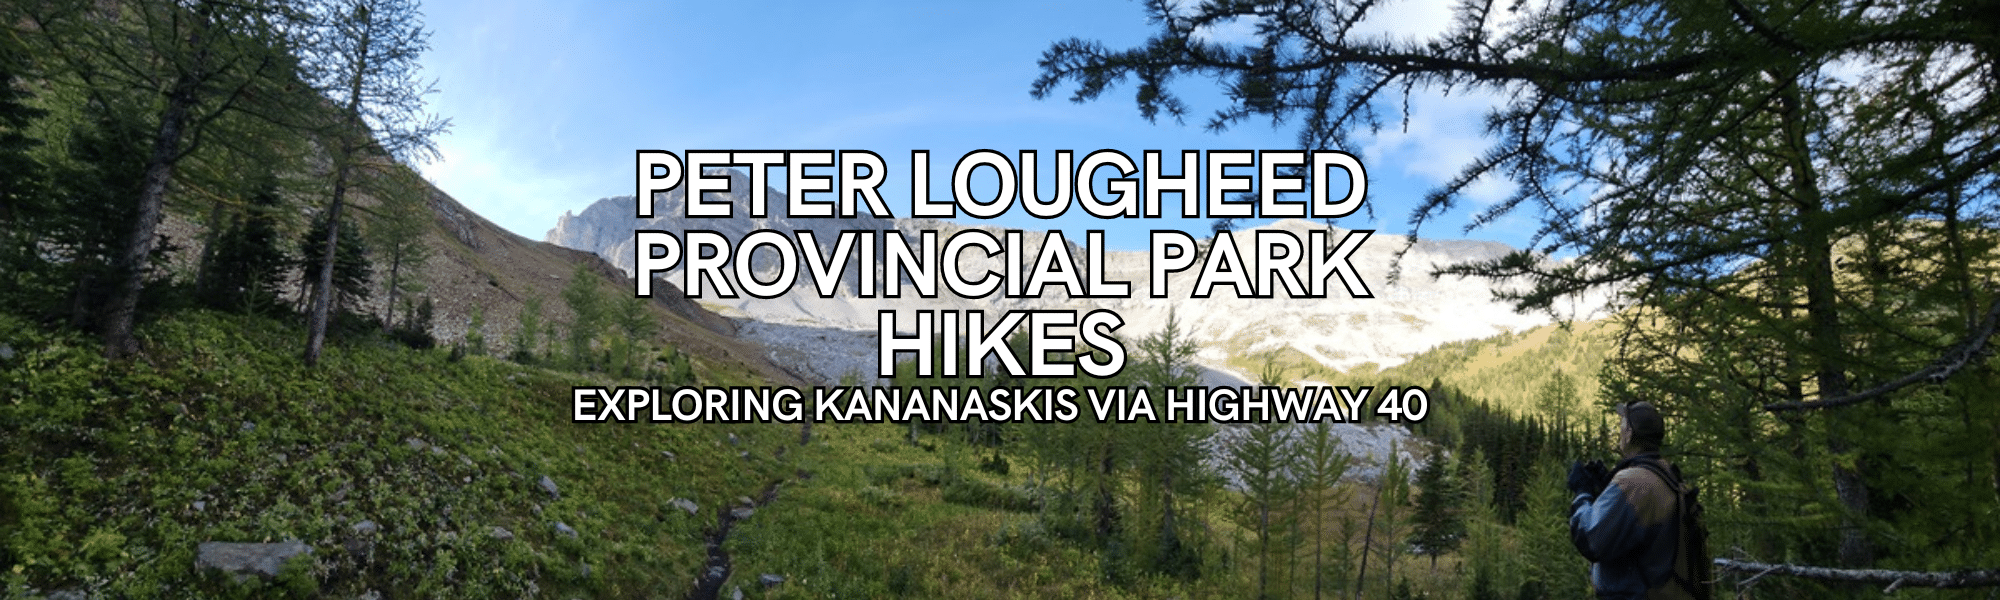 Peter Lougheed Hikes